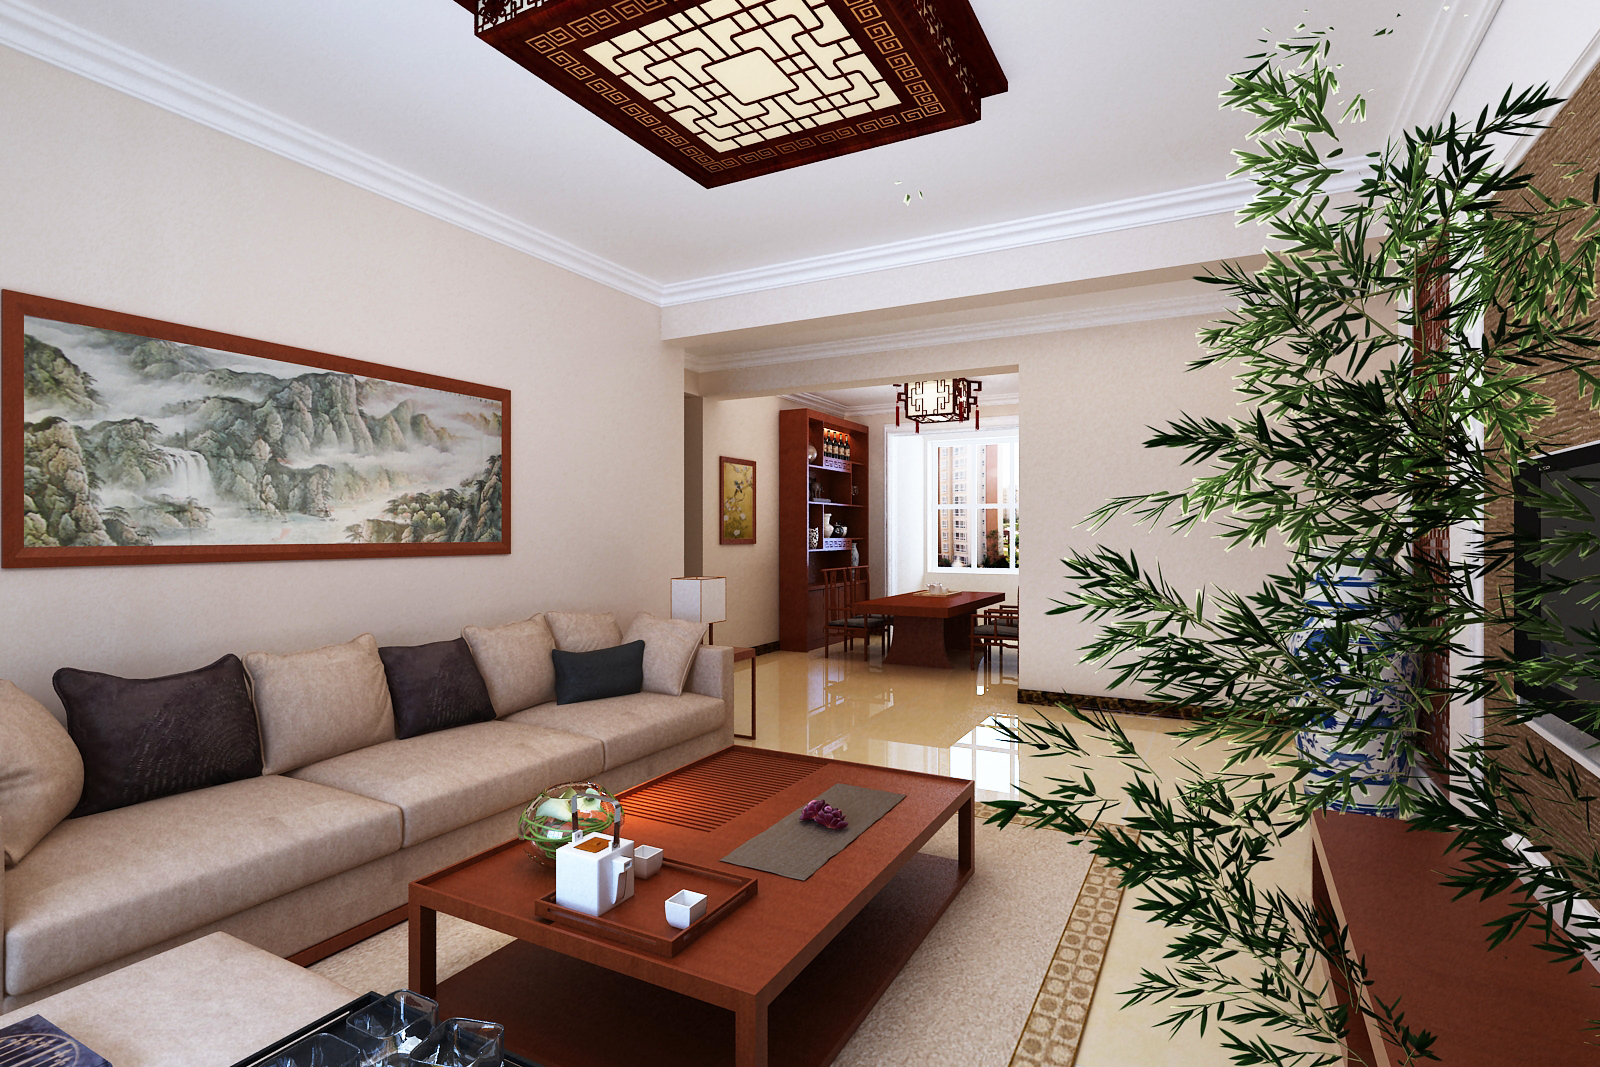 中国风的构成主要体现在传统家具